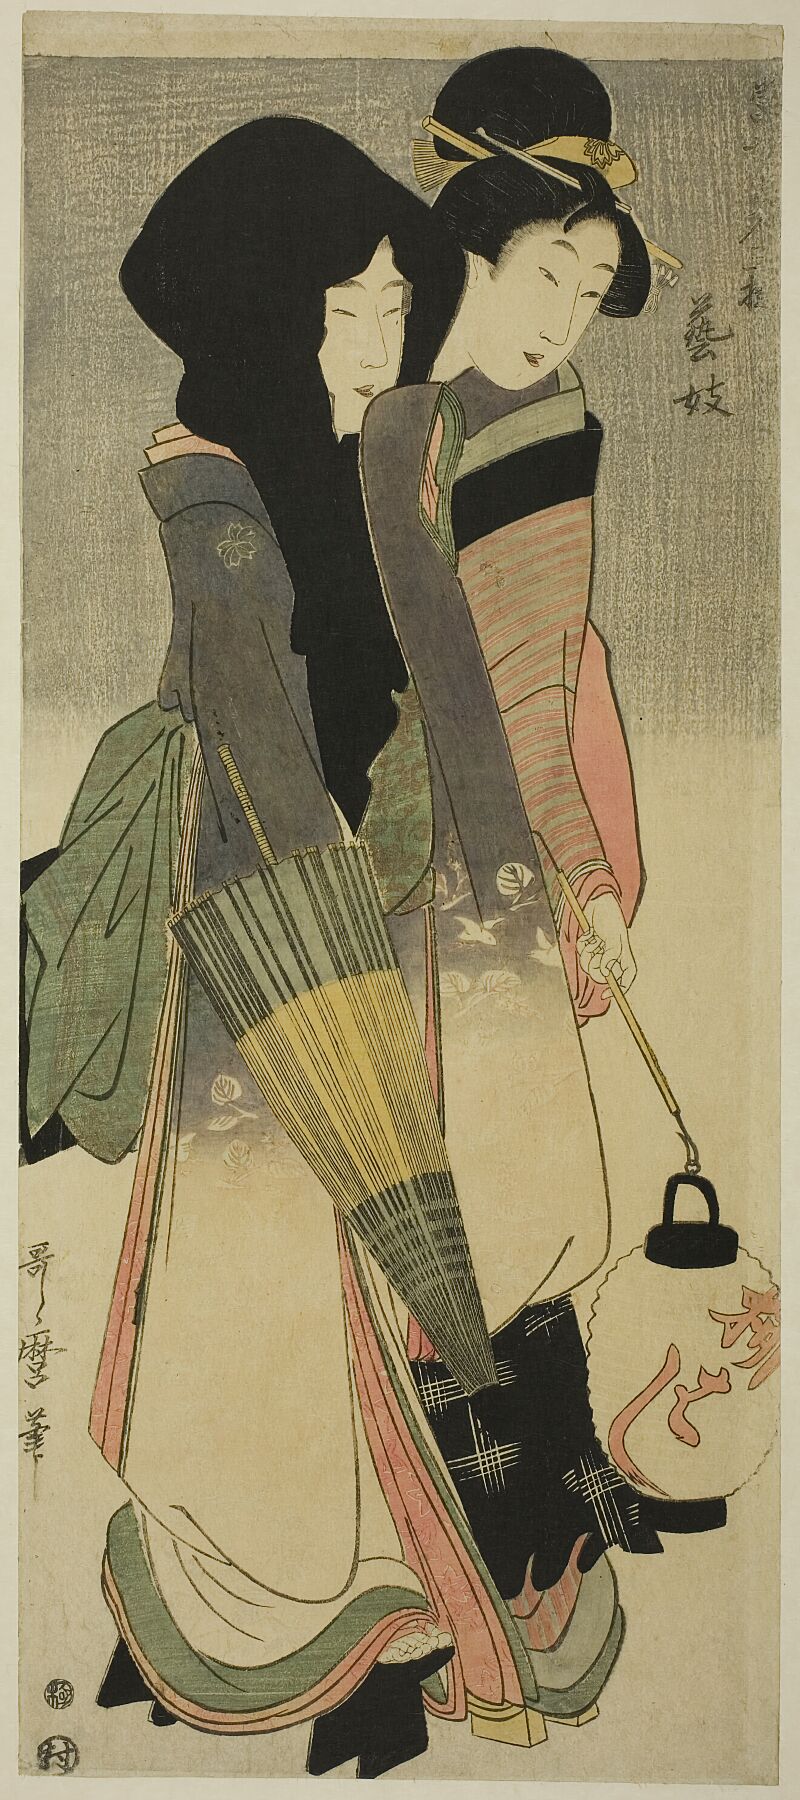 Geisha by Kitagawa Utamaro - c. 1800